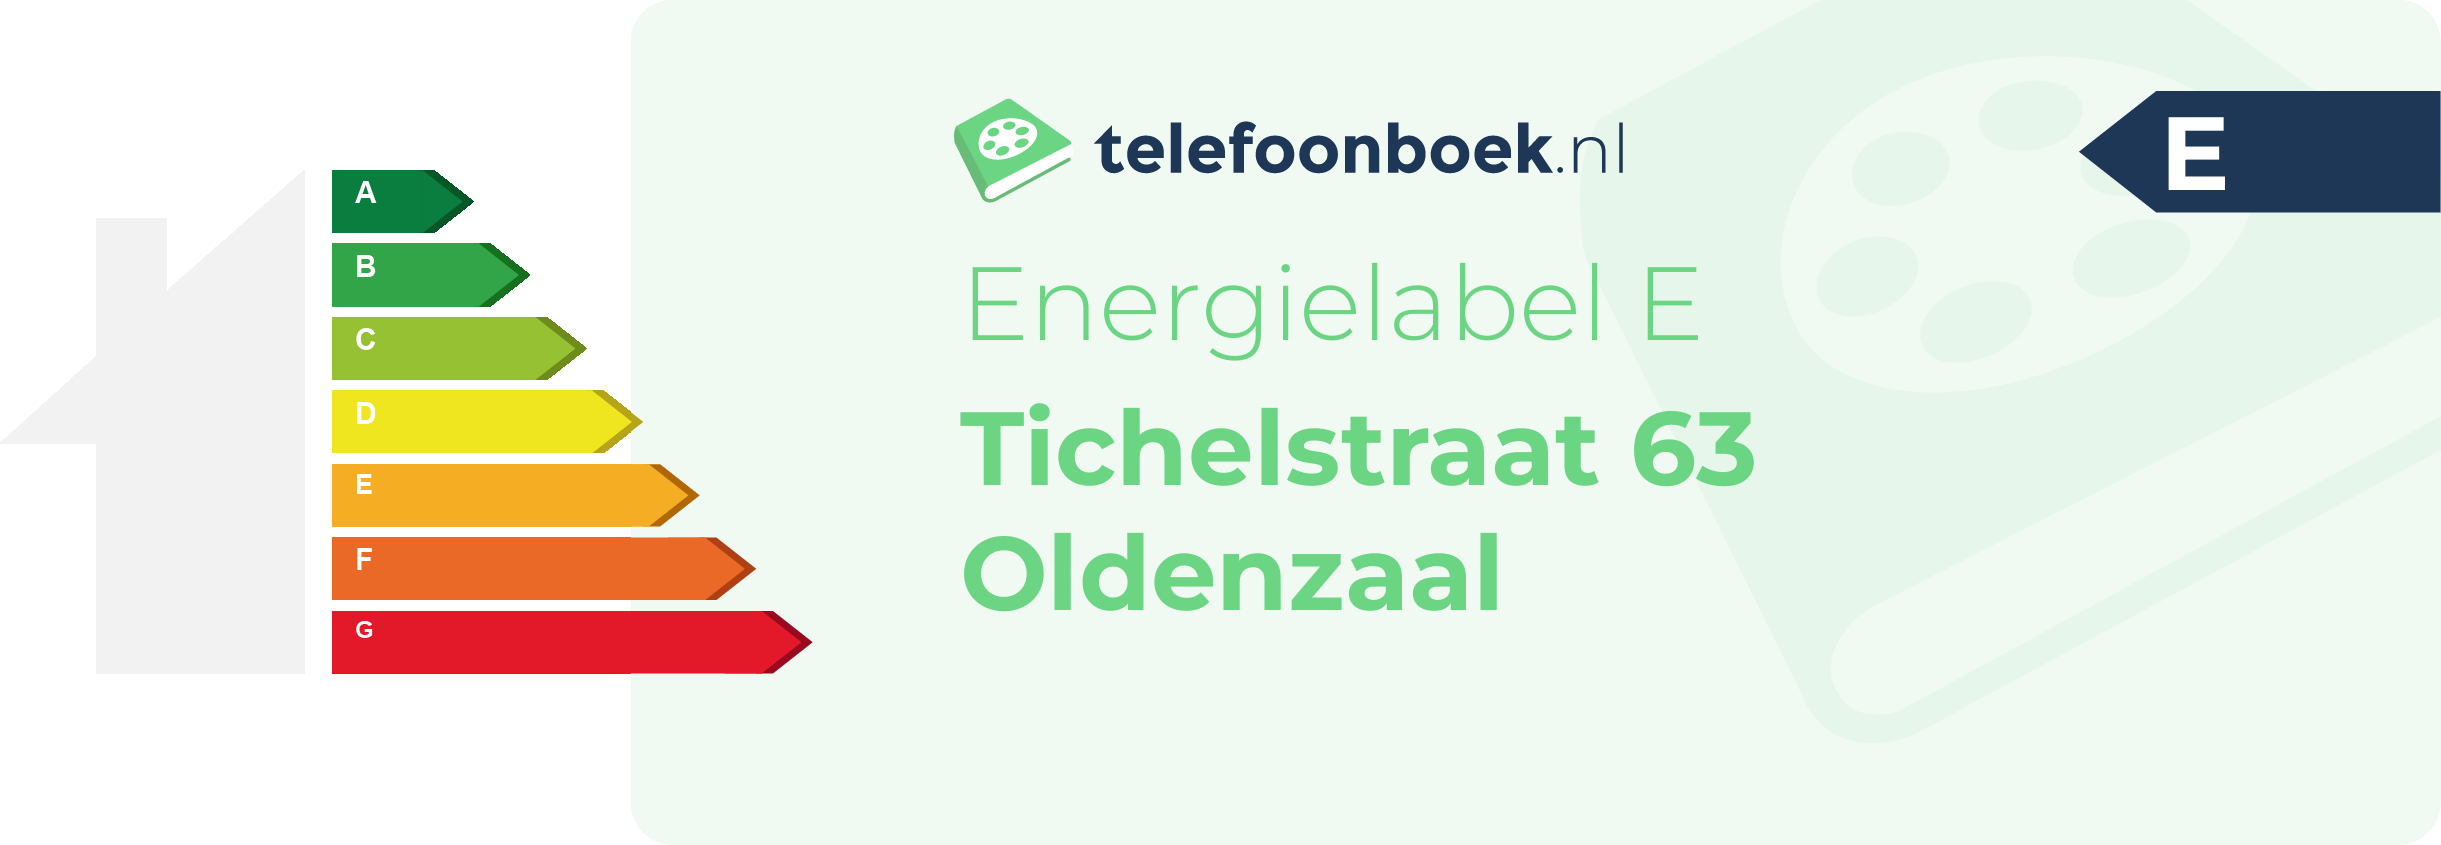 Energielabel Tichelstraat 63 Oldenzaal